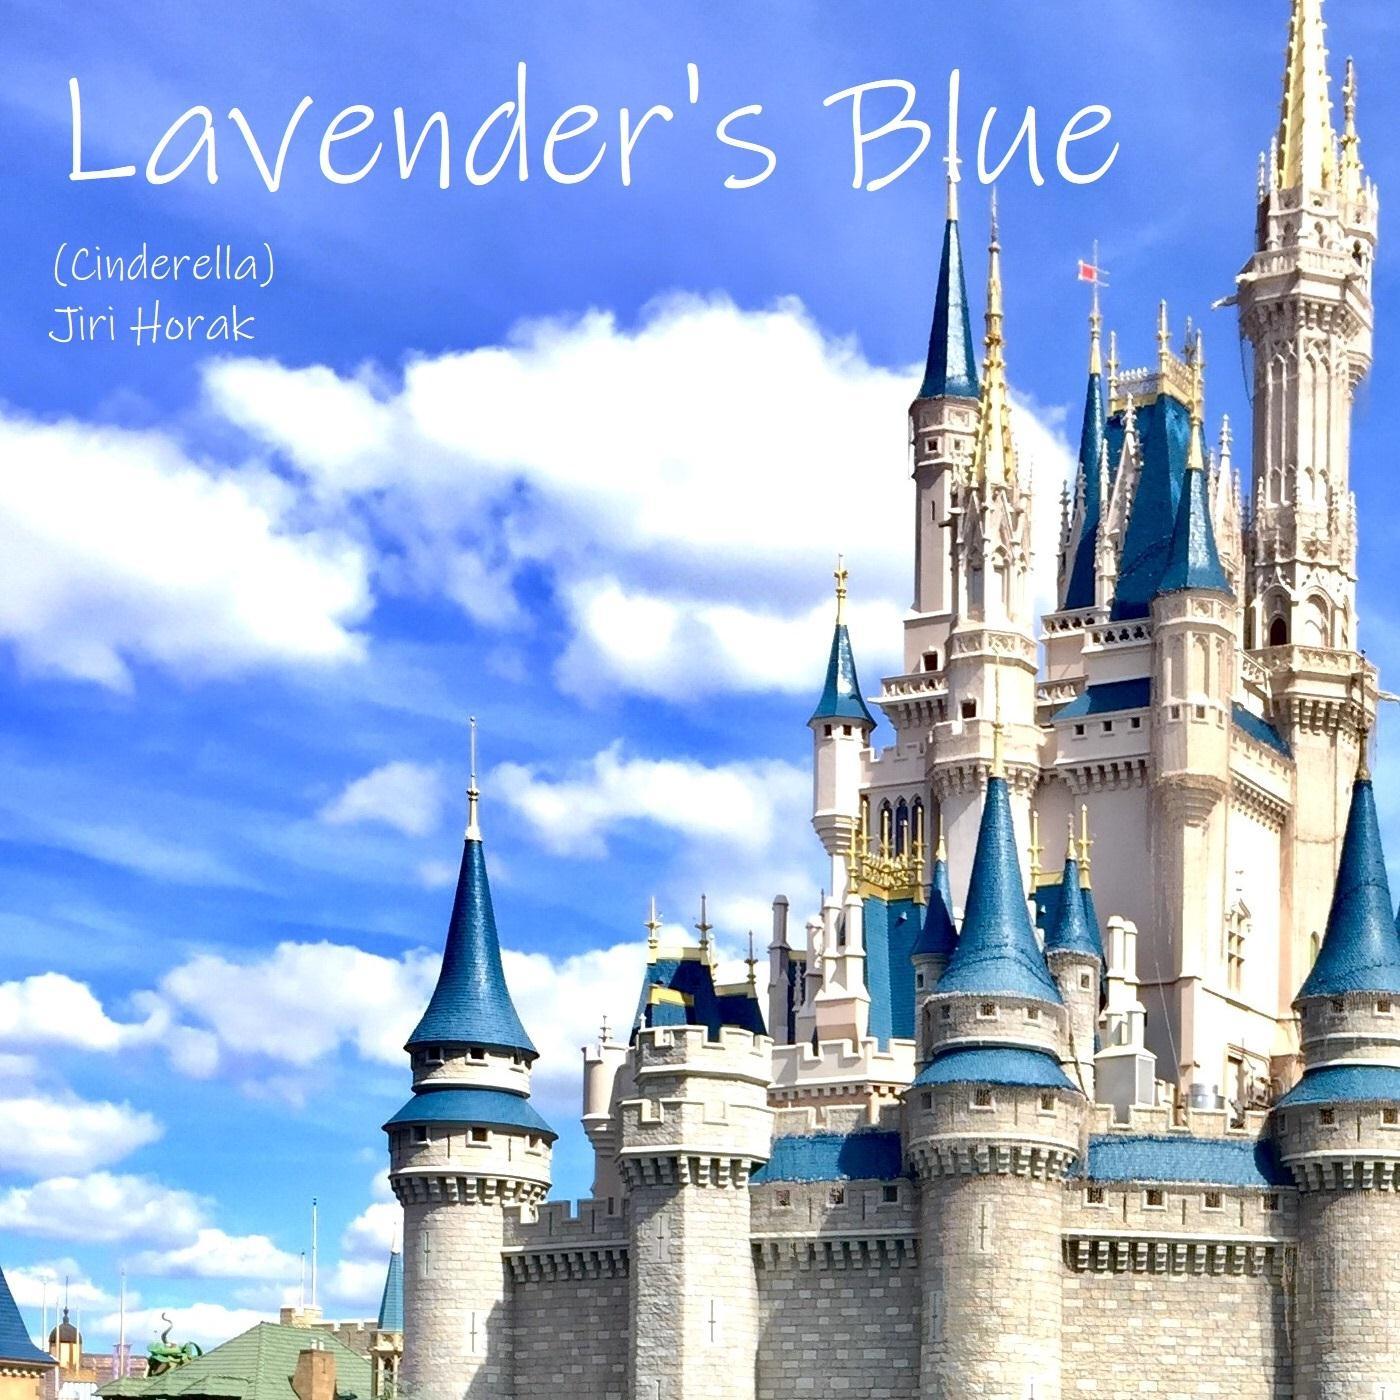 Lavender's Blue